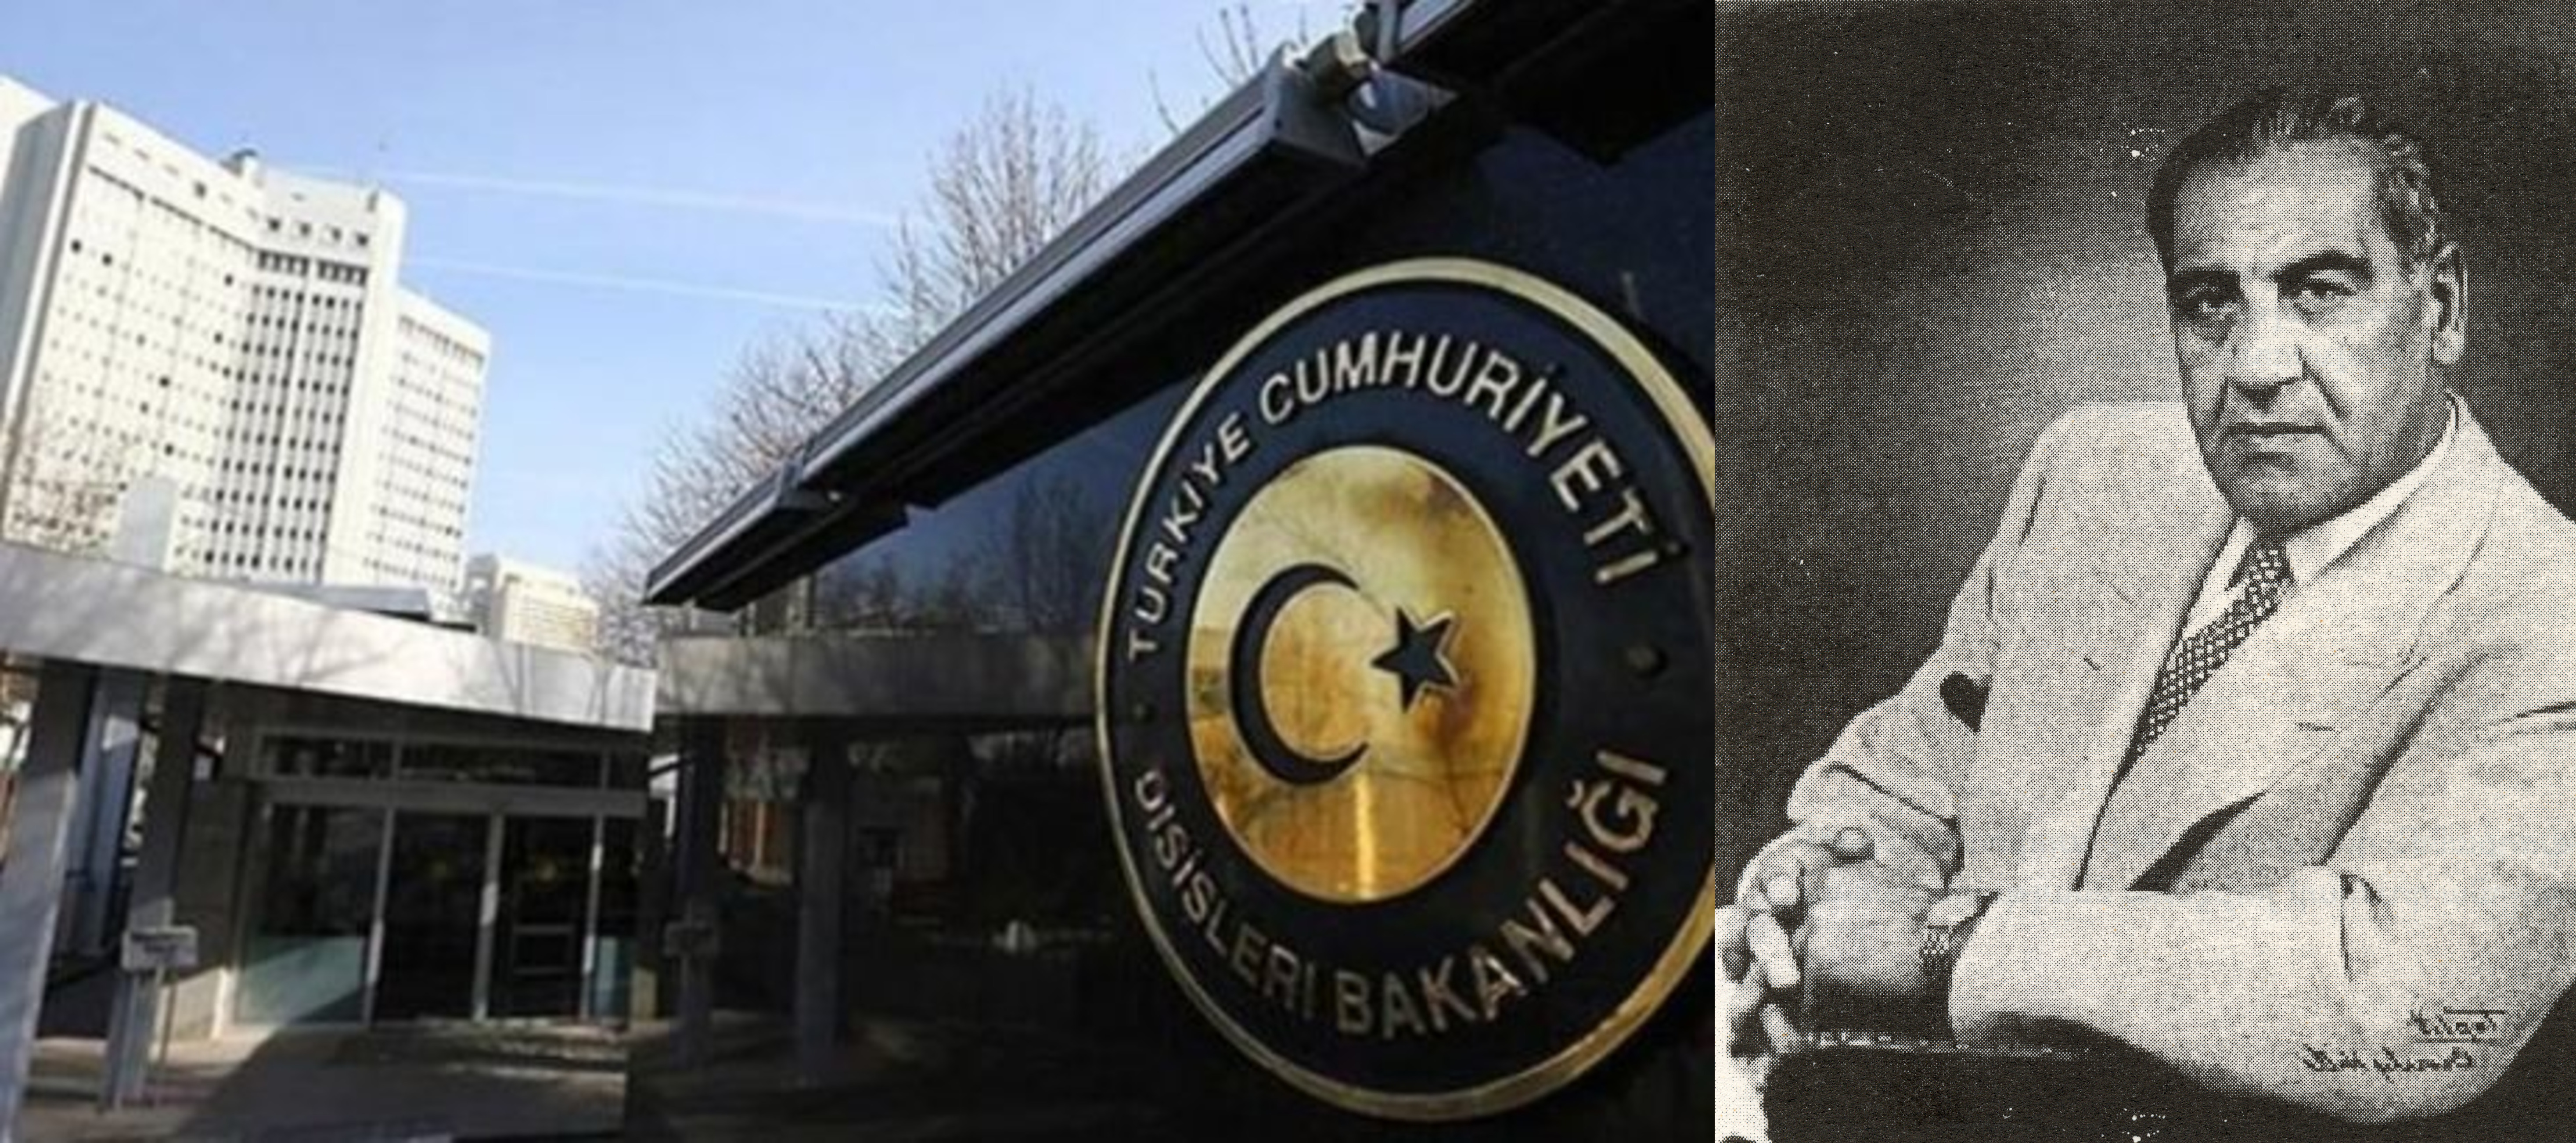 Թուրքիան դատապարտել է ԱՍԱԼԱ-ի կնքահայր Գուրգեն Յանիկյանի մասունքների ամփոփումը Եռաբլուրում